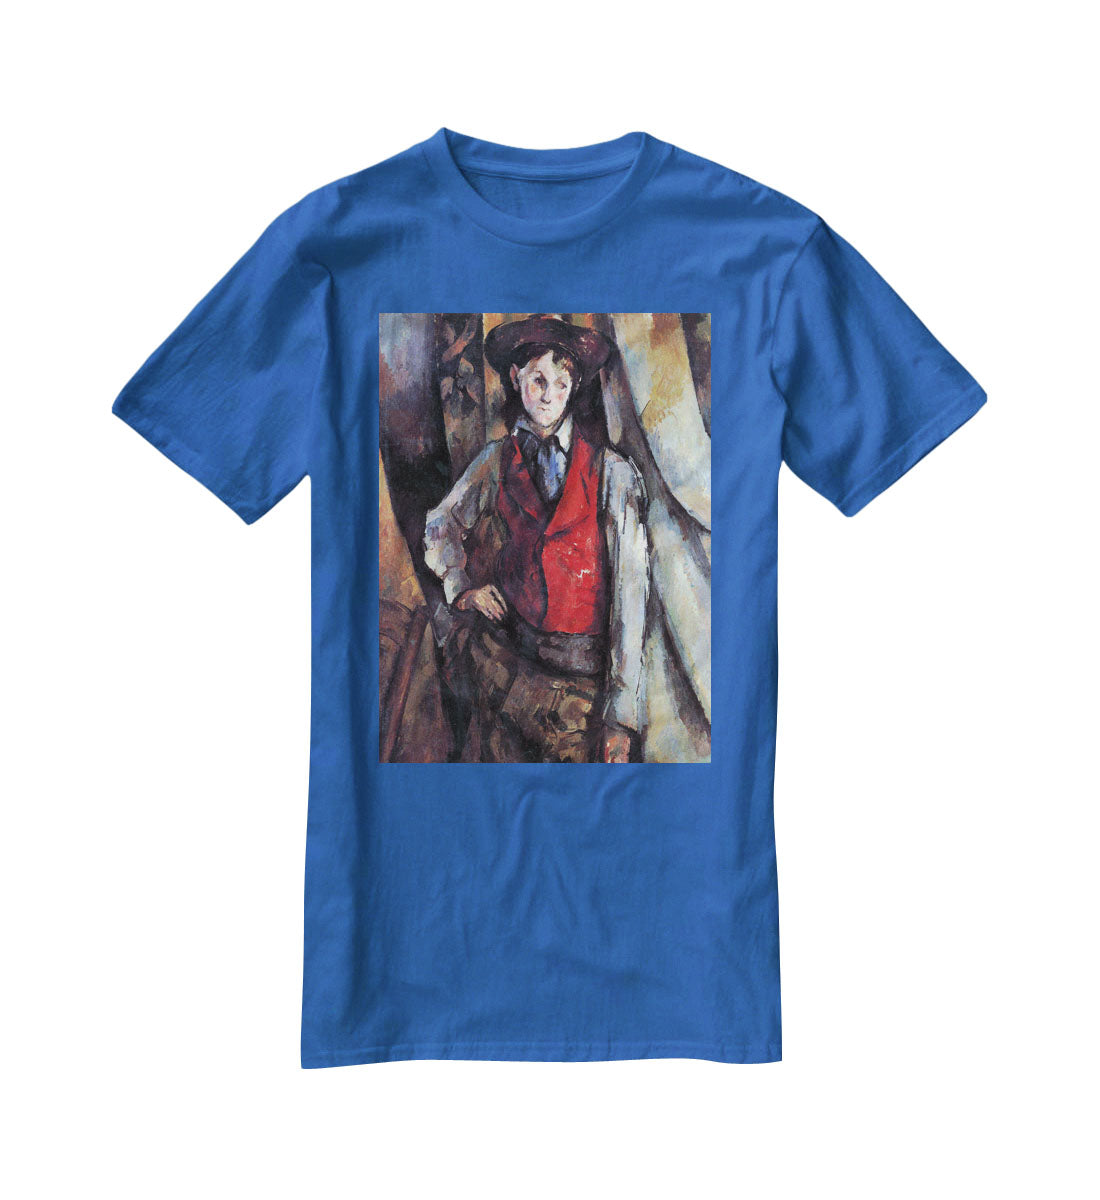 Boy in Red Waistcoat by Cezanne T-Shirt - Canvas Art Rocks - 2